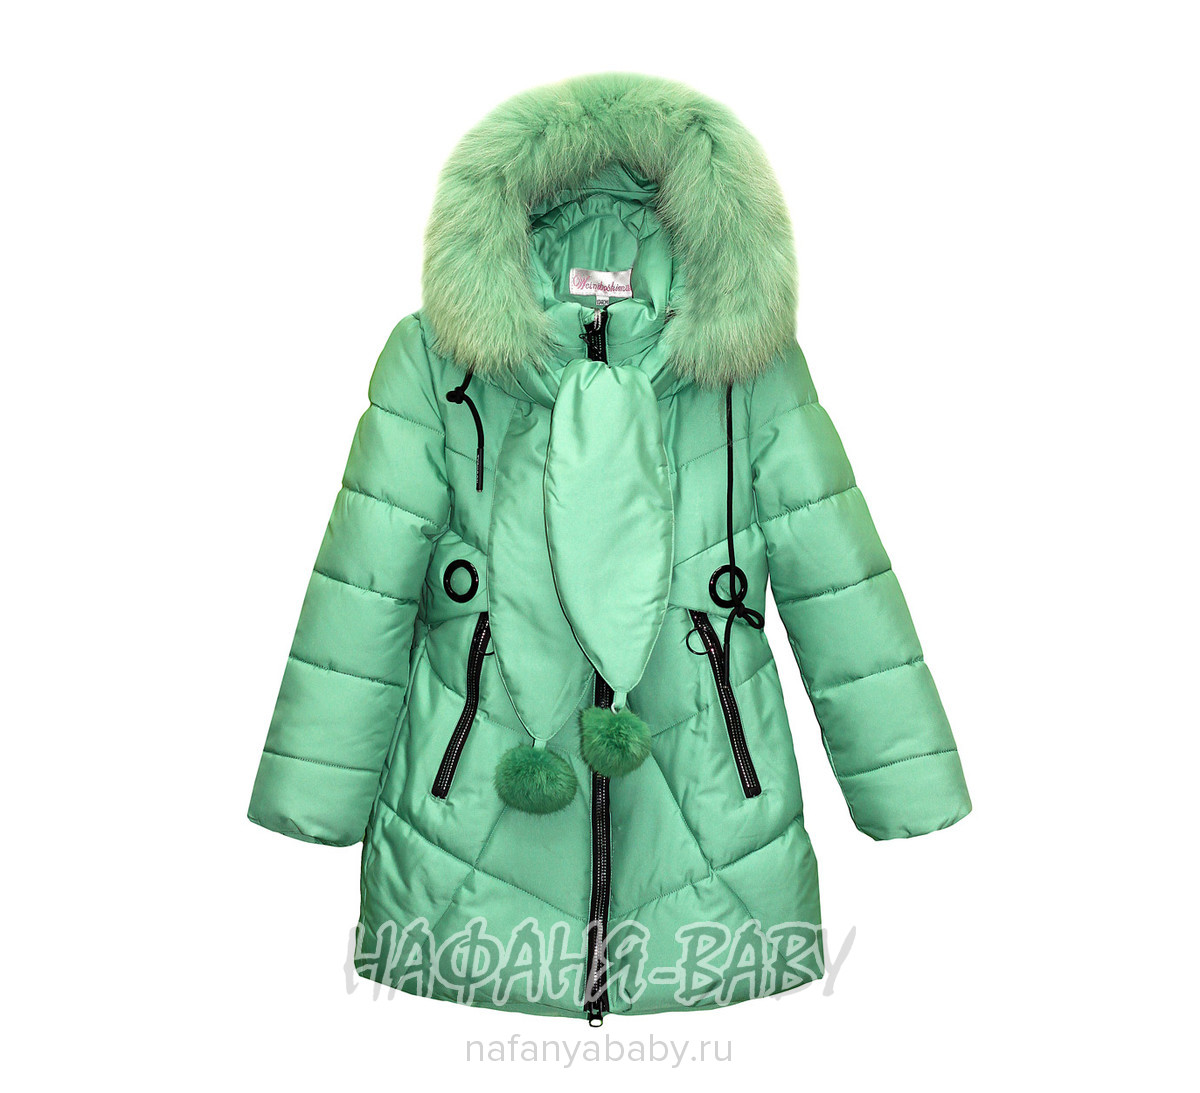 Зимняя подростковая удлиненная куртка + шарфик WEINIBOSHIMAO арт: 804, 10-15 лет, 5-9 лет, оптом Китай (Пекин)